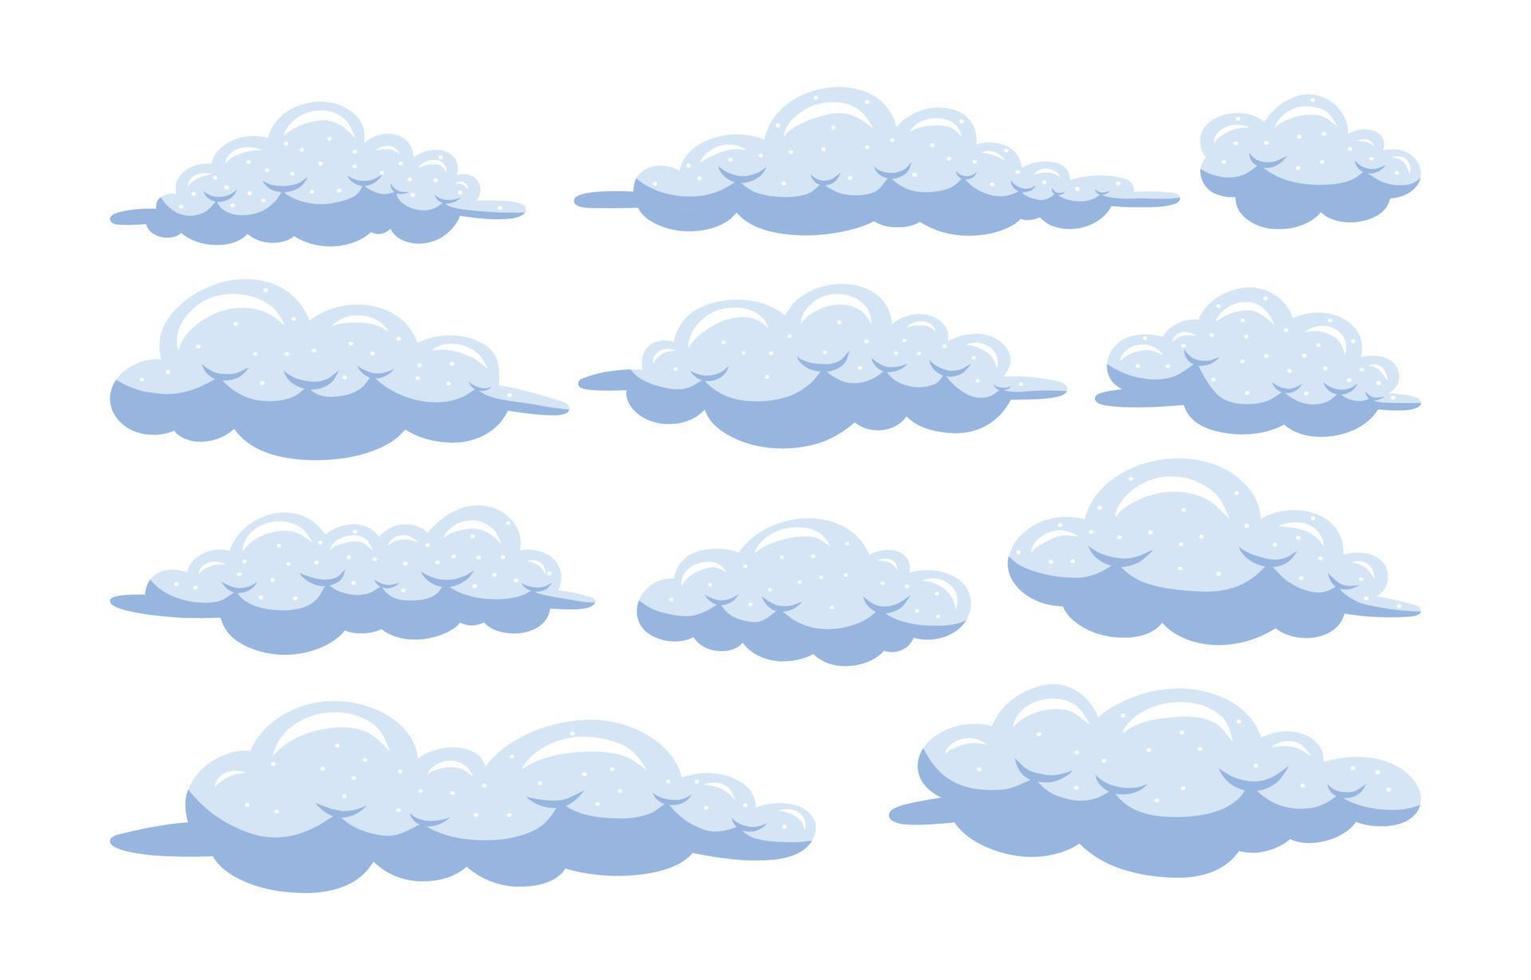 raccolta di elementi dell'icona di doodle disegnato a mano della nuvola vettore